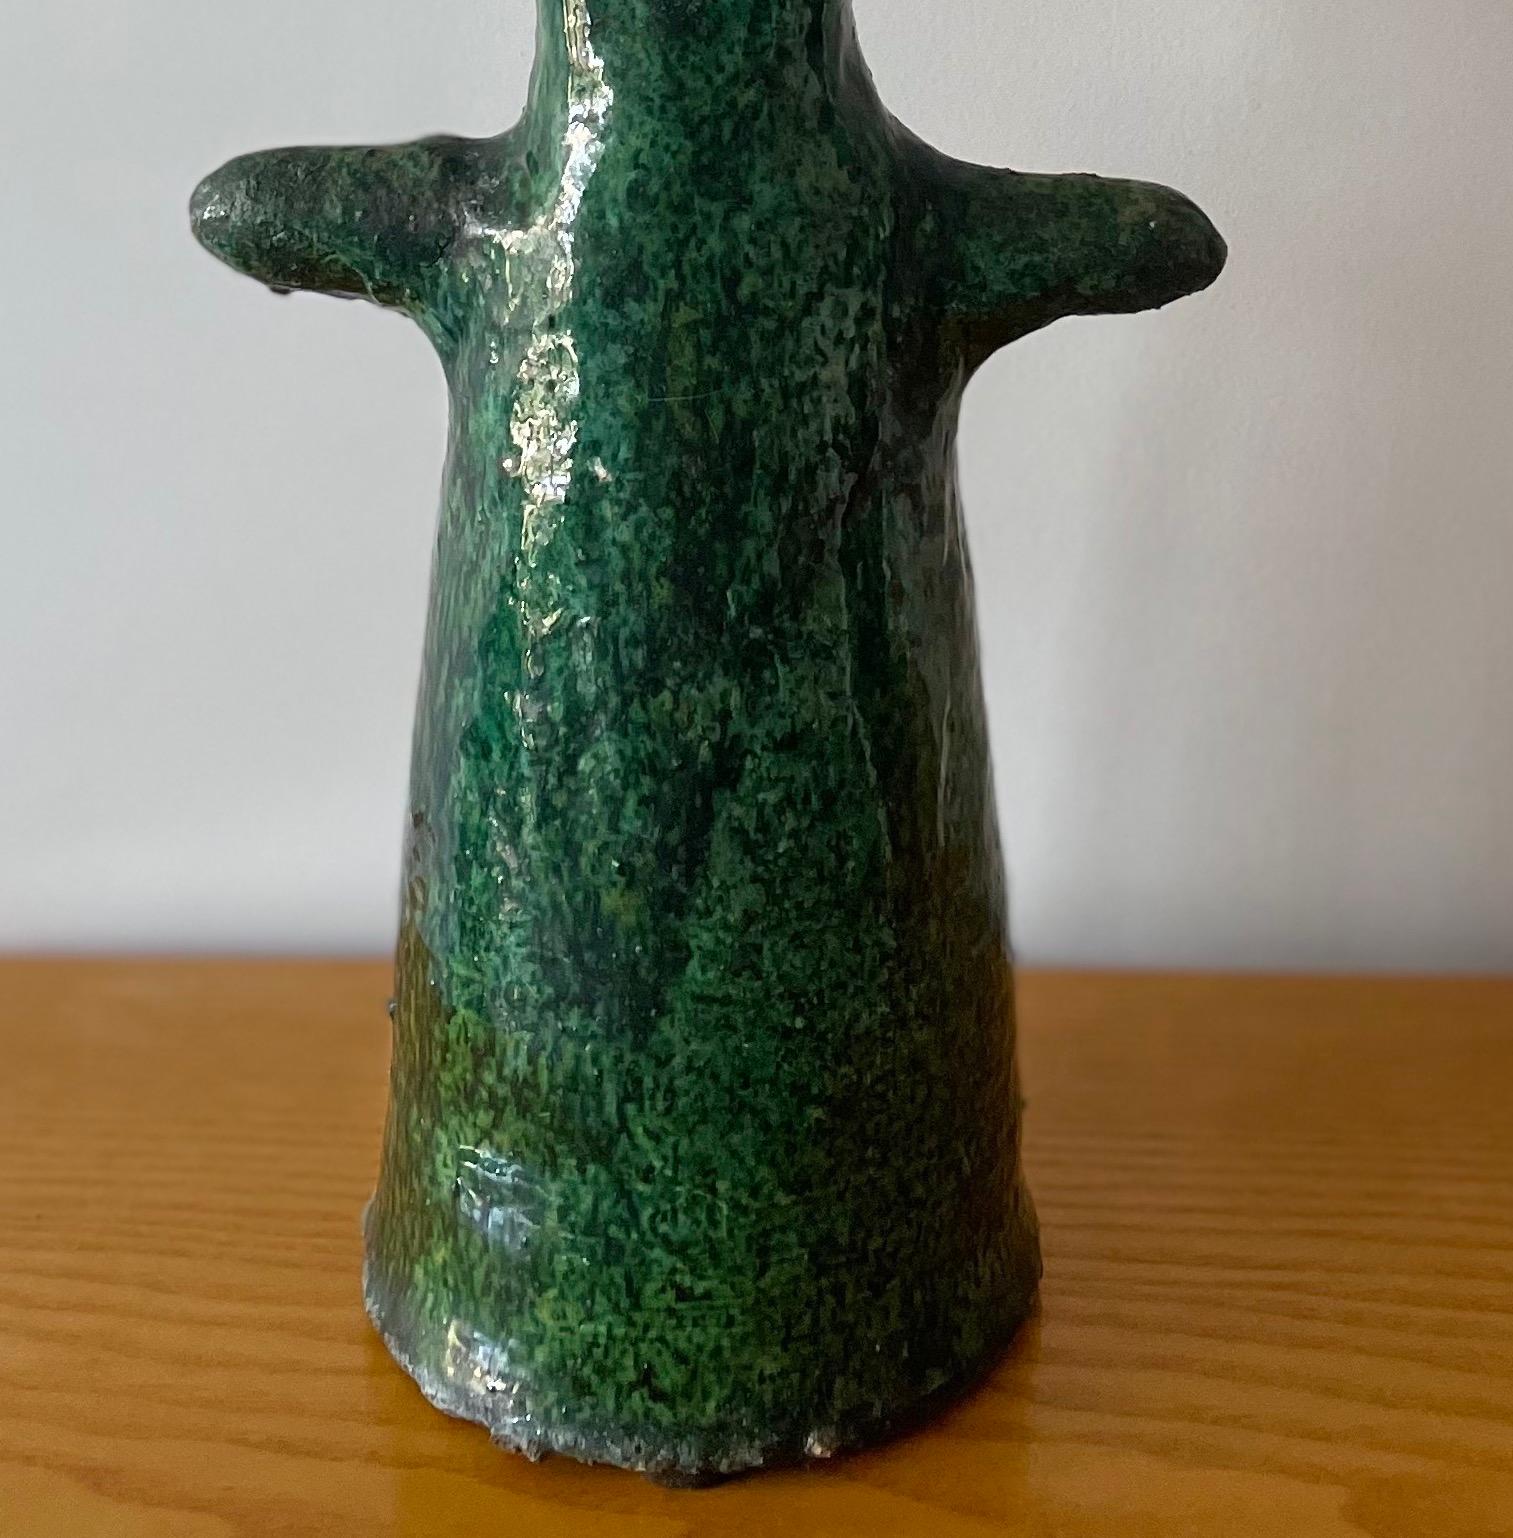 Marokkanische Tamegroute Keramik Vase Skulptur

Diese handgefertigte, grün emaillierte Vintage-Vase ist eine reine Skulptur aus dem südmarokkanischen Dorf Tamegroute, wo geschickte Töpfer lokale Techniken praktizieren, die über Generationen hinweg